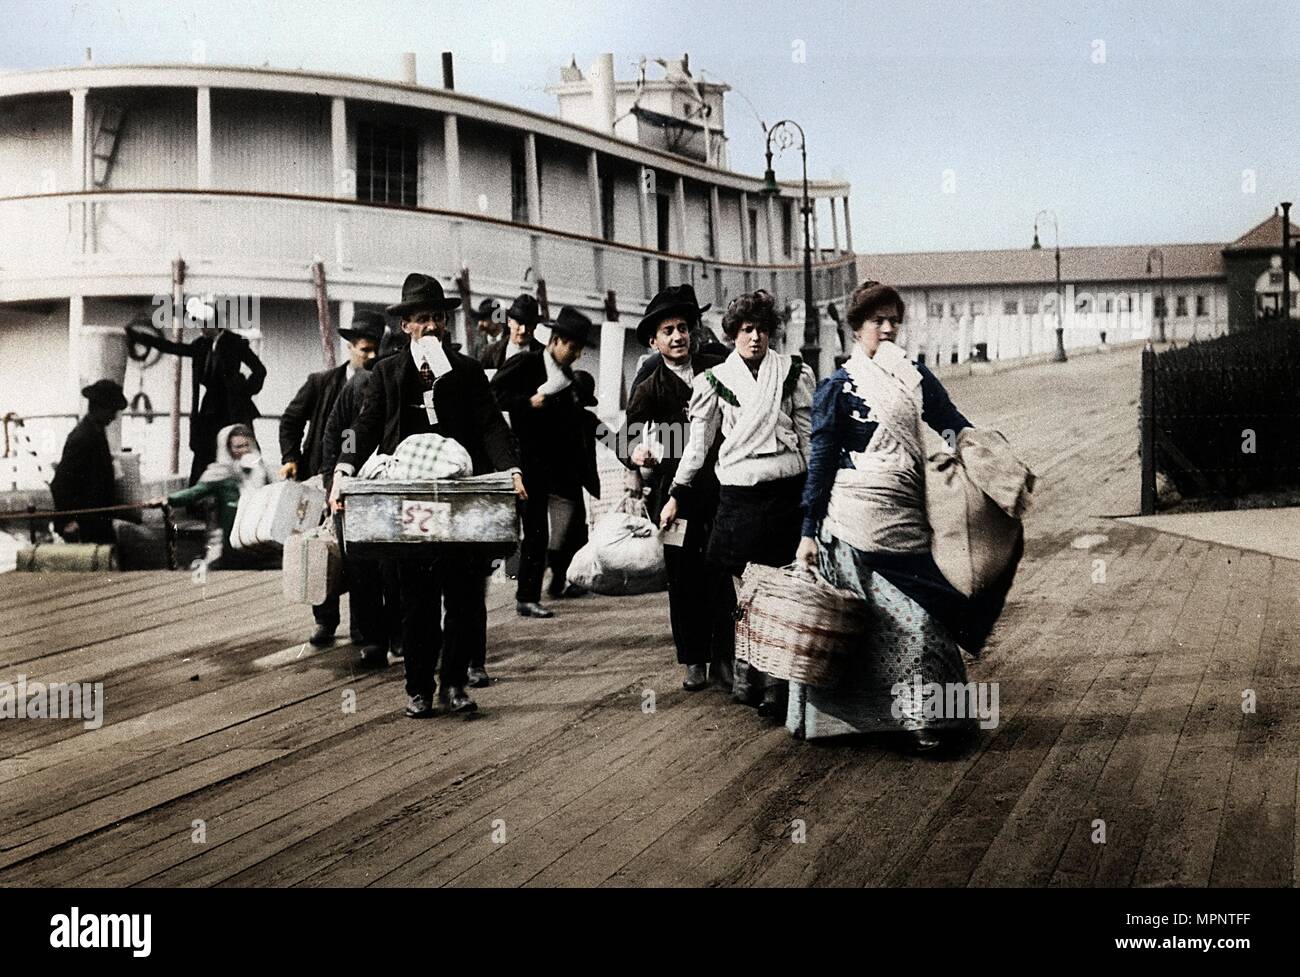 Les immigrants vers les USA à l'atterrissage à Ellis Island, New York, c1900. Artiste : Inconnu. Banque D'Images